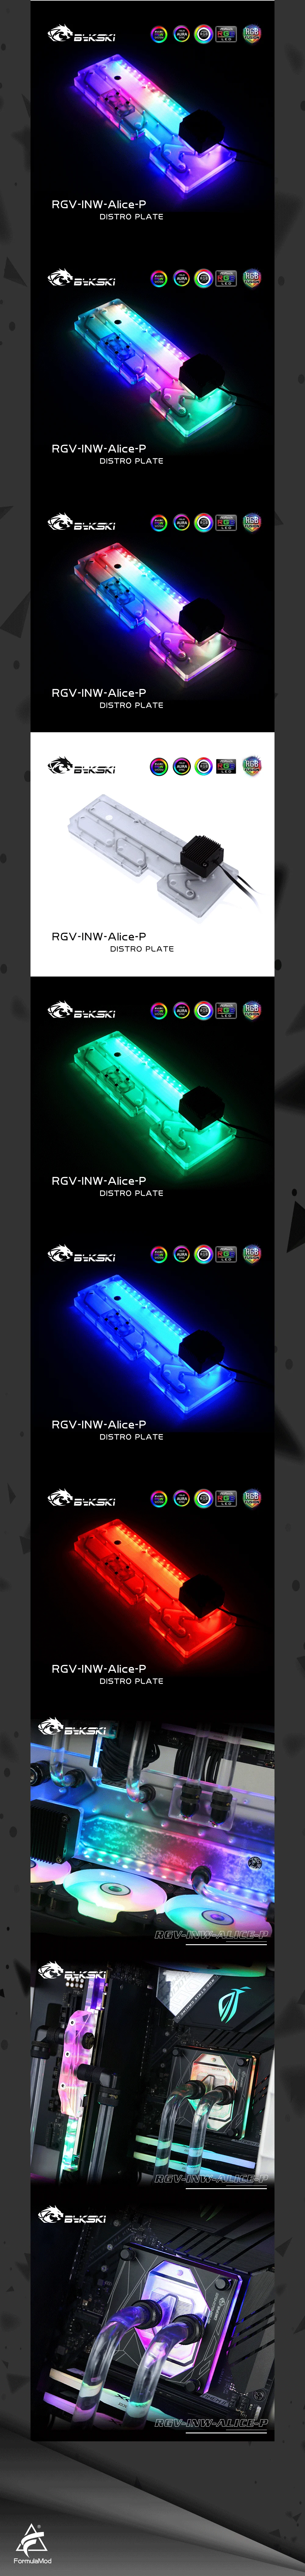 Bykski Waterway Cooling Kit For IN WIN Alice Case, 5V ARGB, For Single GPU Building, RGV-INW-Alice-P  